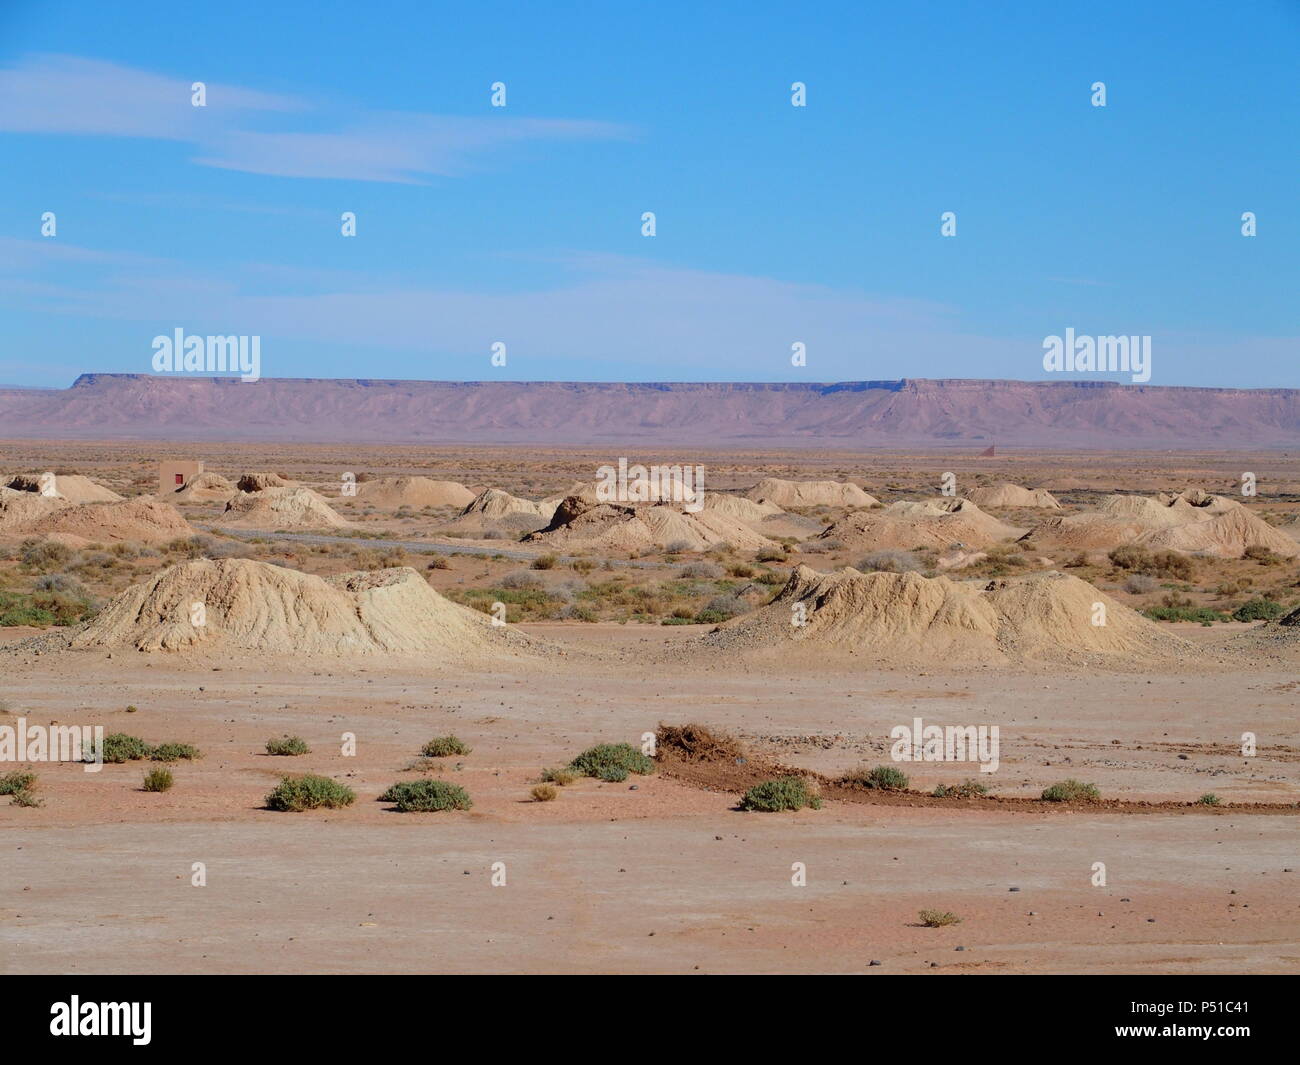 Berühmten Panorama von Ketthara, das Wasser gut an afrikanischen Wüste Sahara Landschaften in der Nähe von Erfoud in Marokko mit klaren blauen Himmel in 2017 kalten sonnigen wi Stockfoto